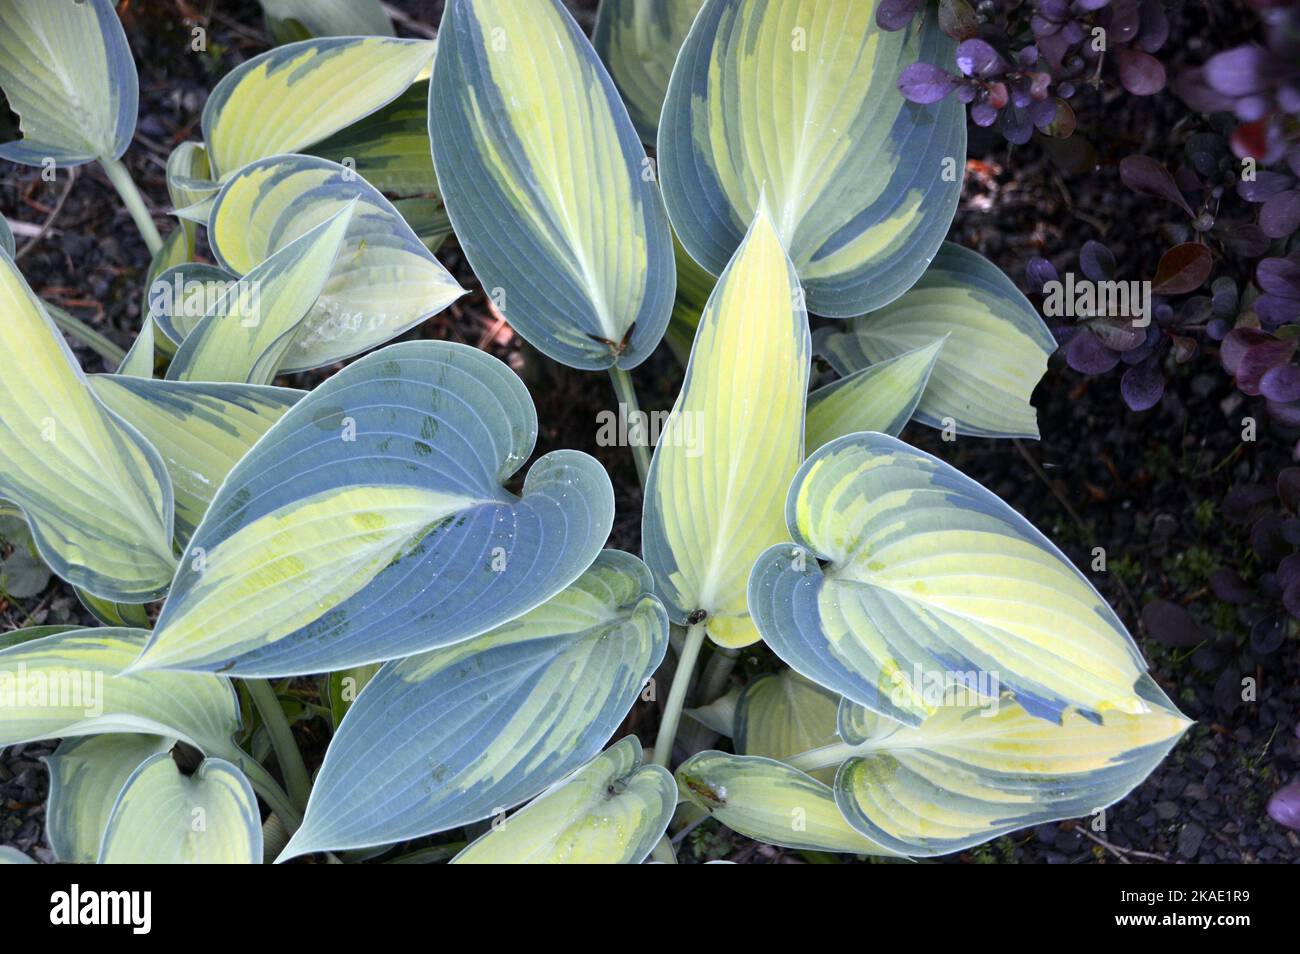 Grün/gelb-buntes Hosta 'June' (Plantain Lily)-Blatt, das bei RHS Garden Rosemoor, Torrington, Devon, England, Großbritannien, angebaut wird. Stockfoto